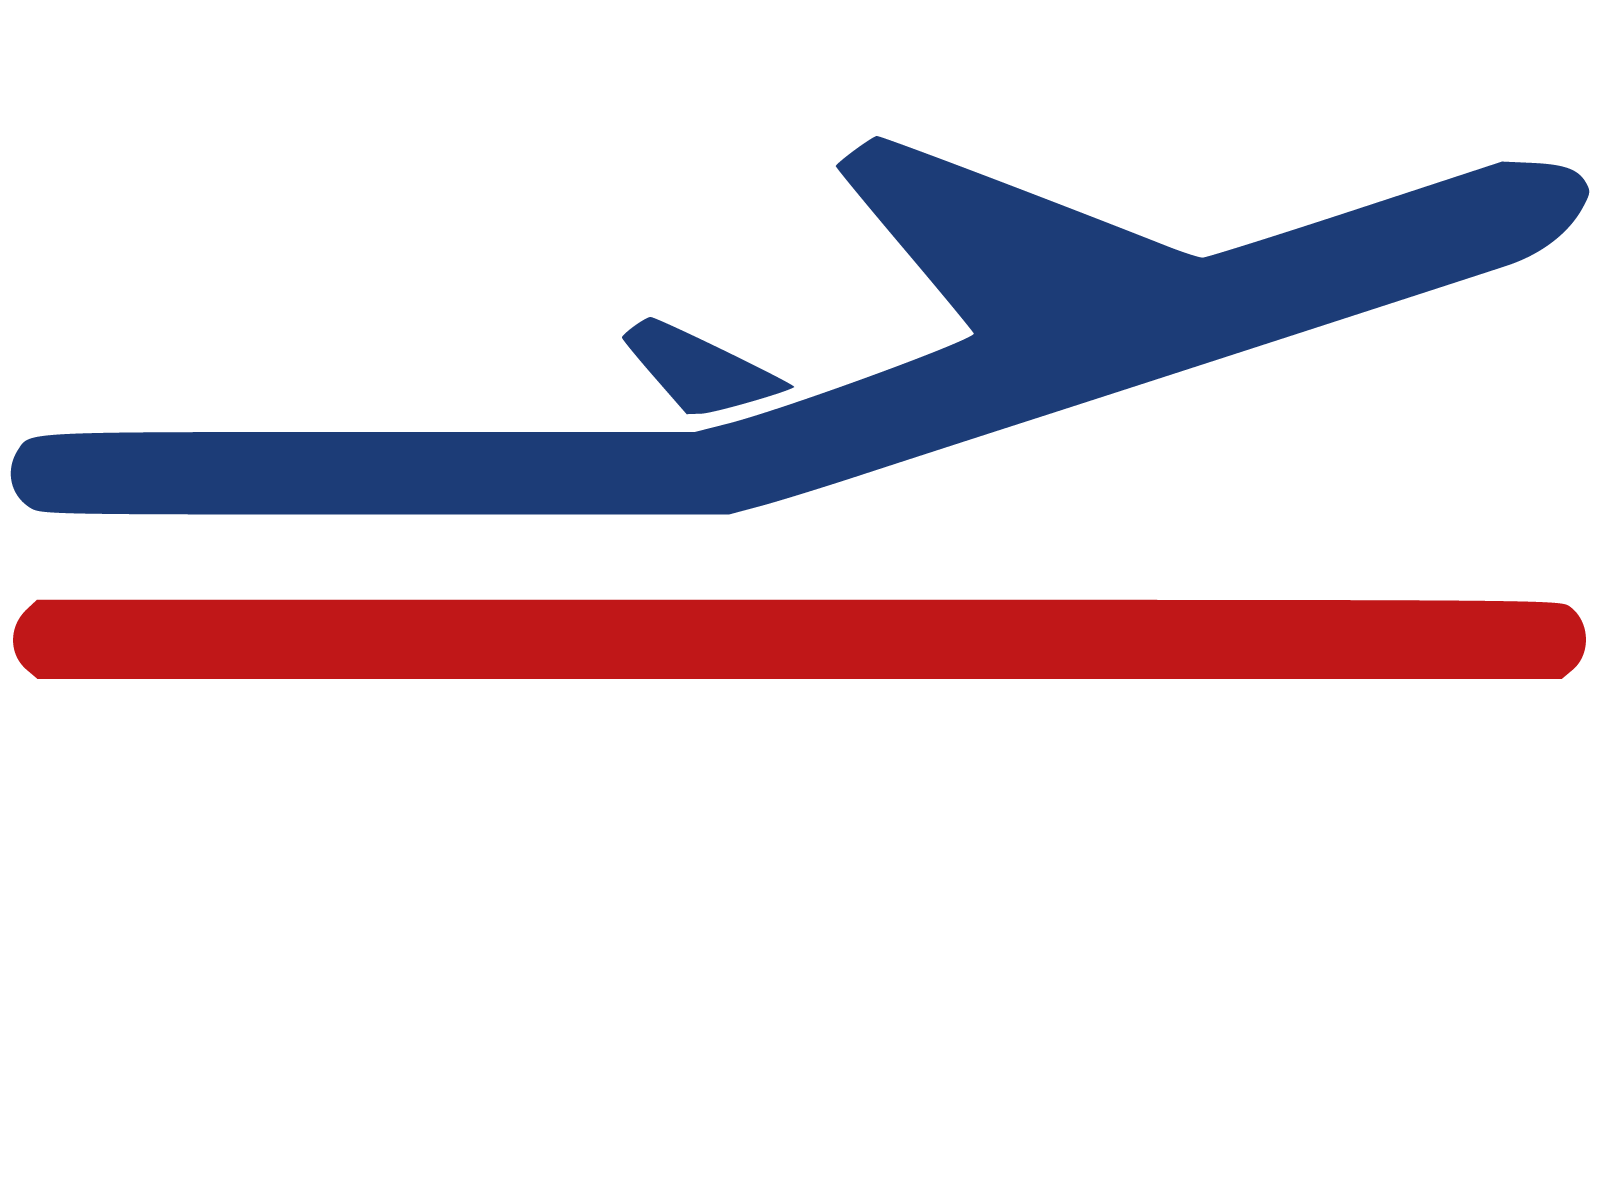 Lübeck Air